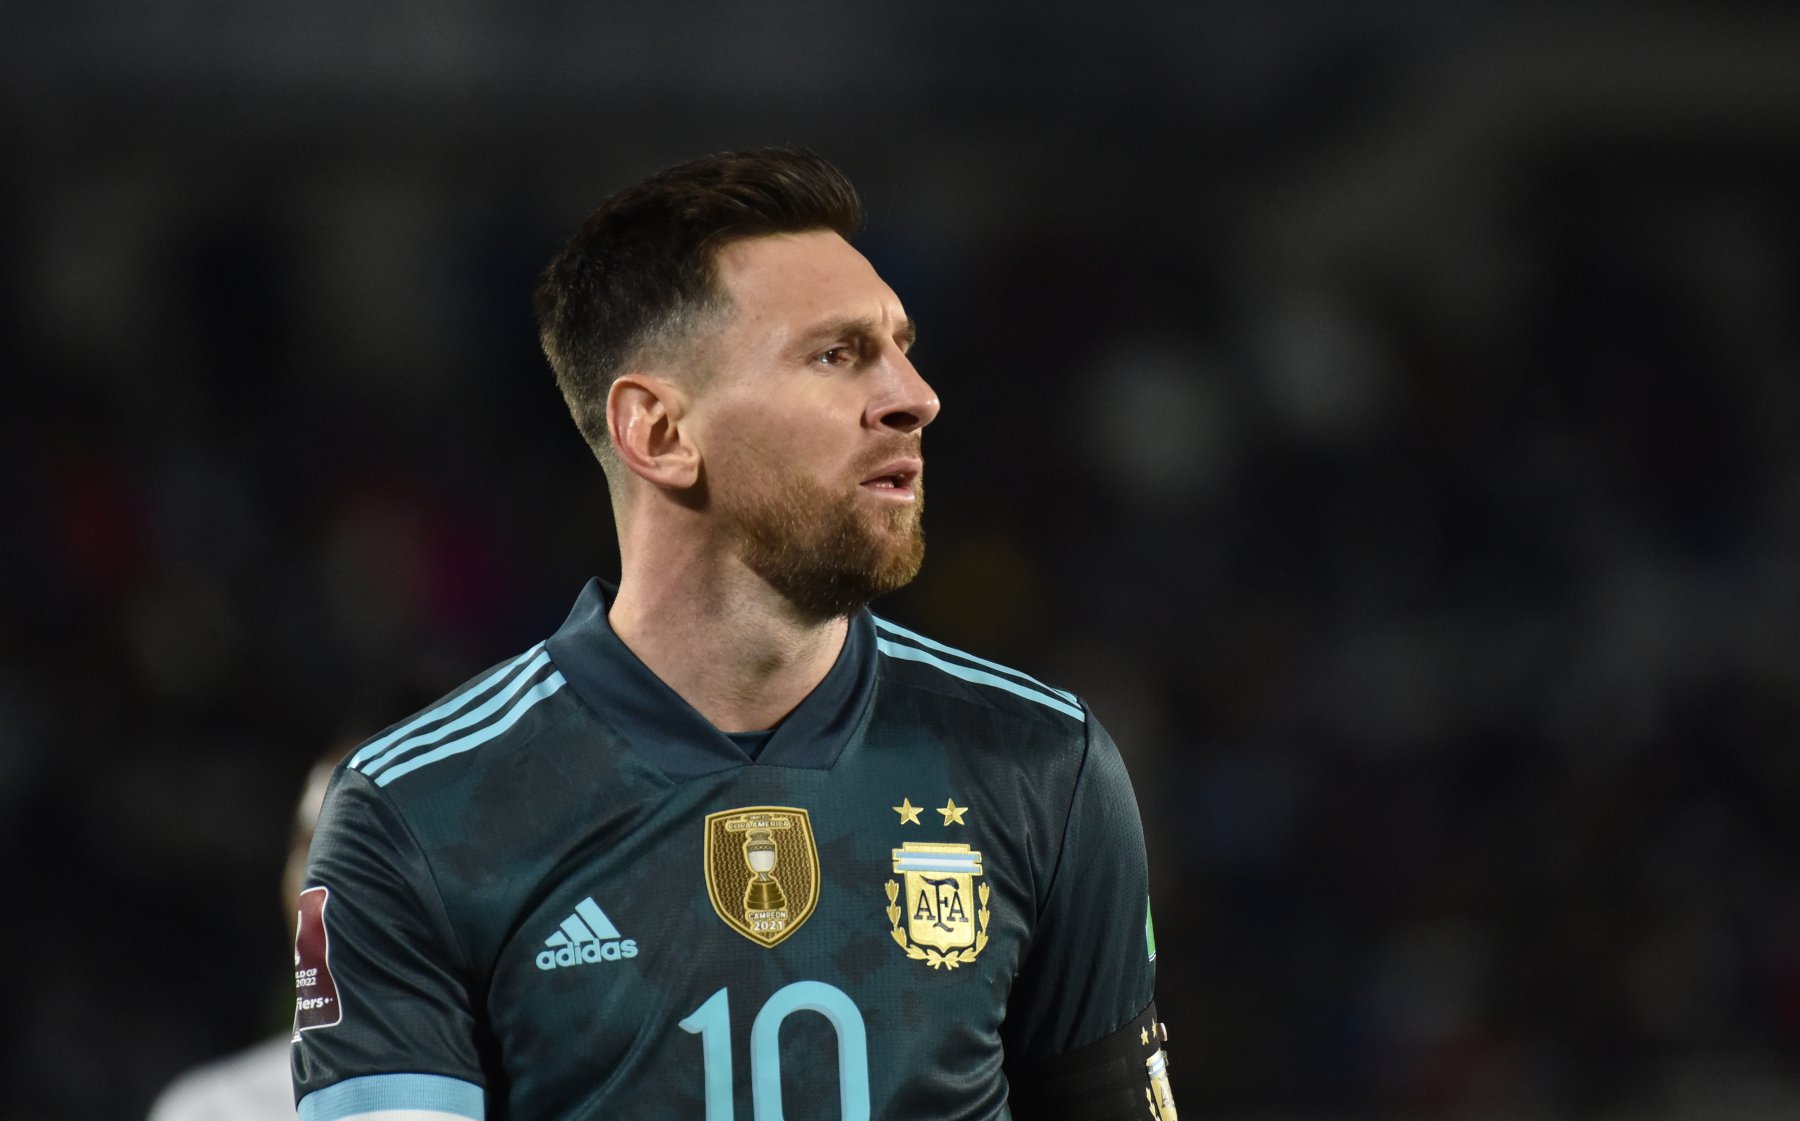 Ο Messi ξανάνιωσε: Στα 35 του διανύει καλύτερη φόρμα από τα προηγούμενα 4 χρόνια και θέλει το Μουντιάλ